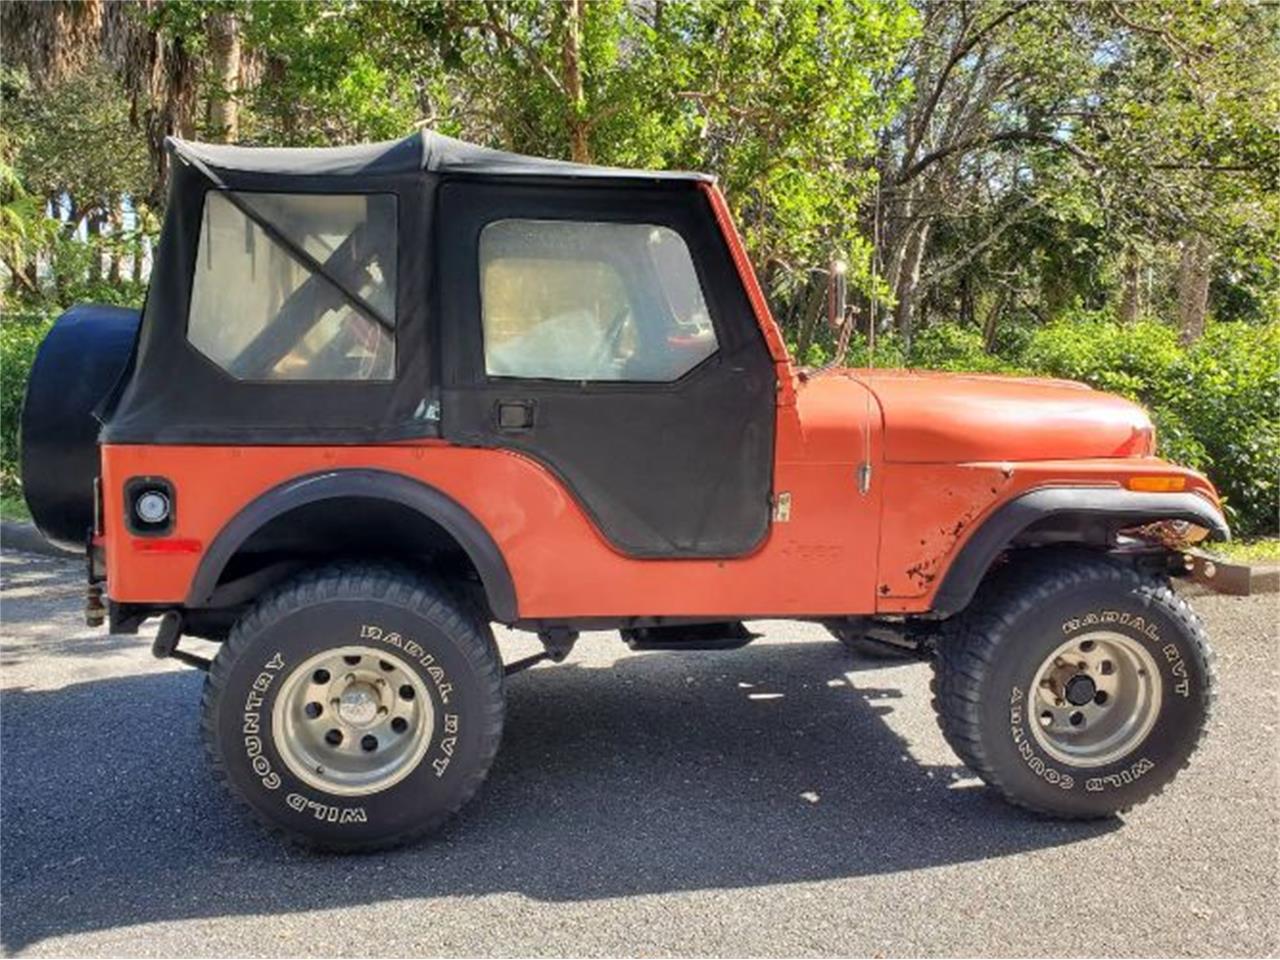 For Sale: 1979 Jeep CJ in Cadillac, Michigan for sale in Cadillac, MI